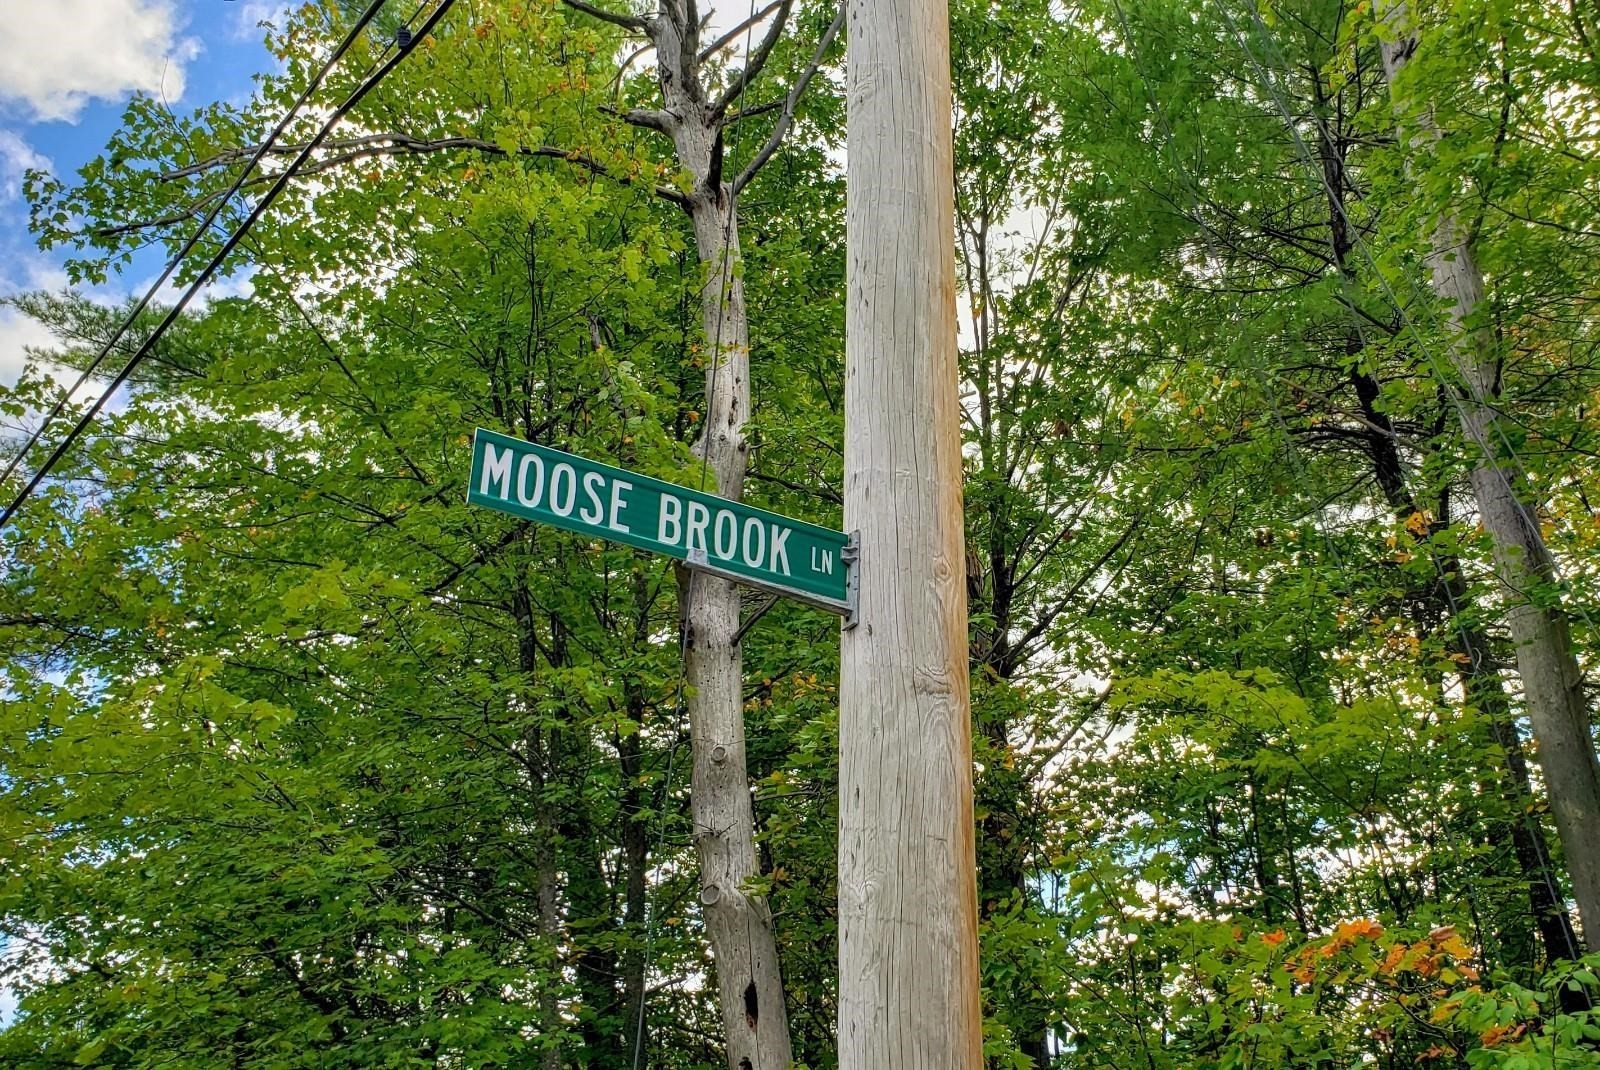 2. 11 Moose Brook Lane